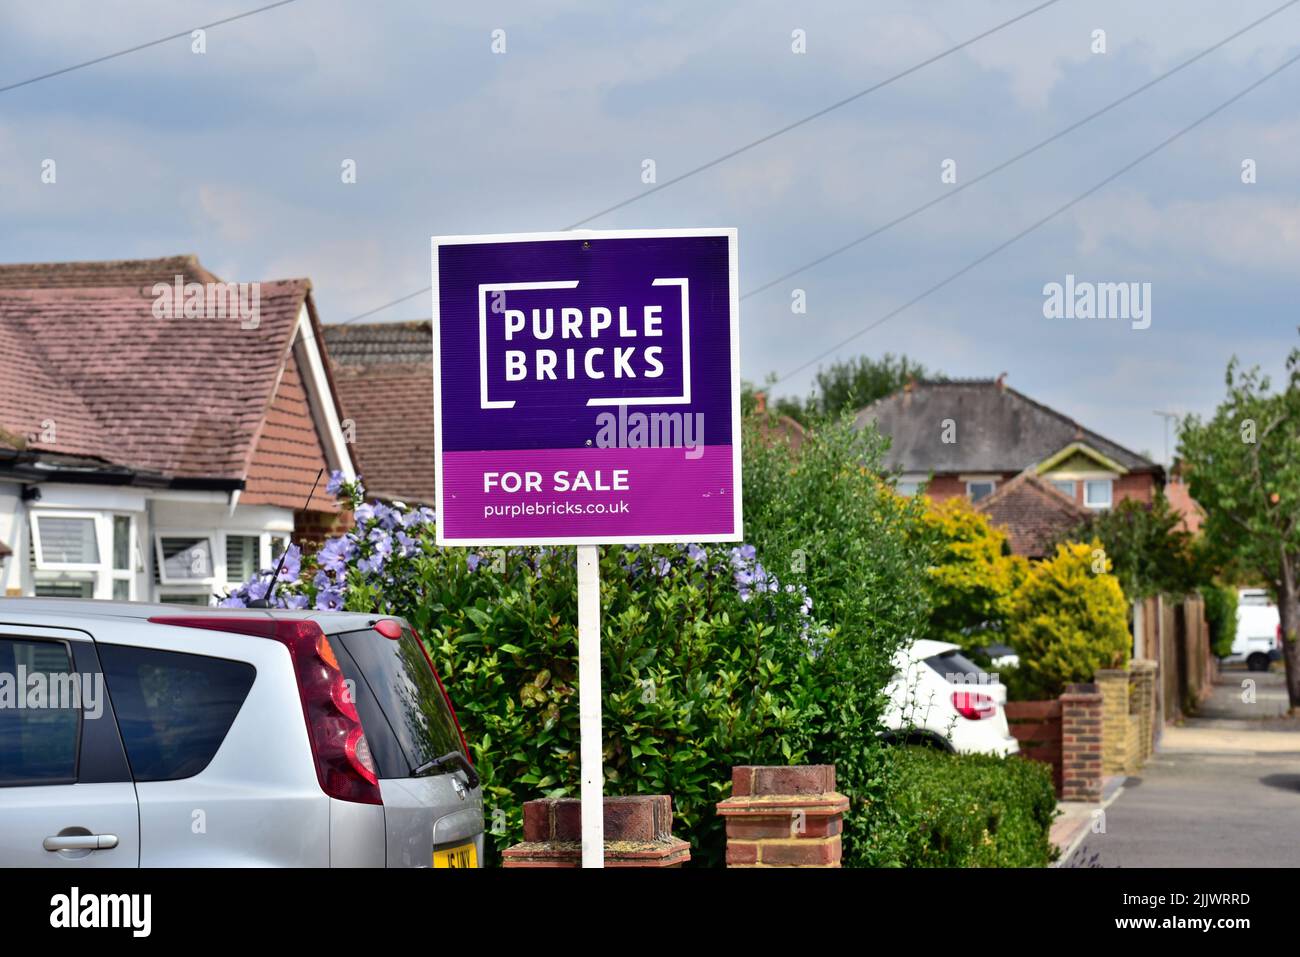 A 'Purple Bricks' agentes inmobiliarios en línea firman fuera de una casa suburbana en Shepperton Surrey Reino Unido Foto de stock